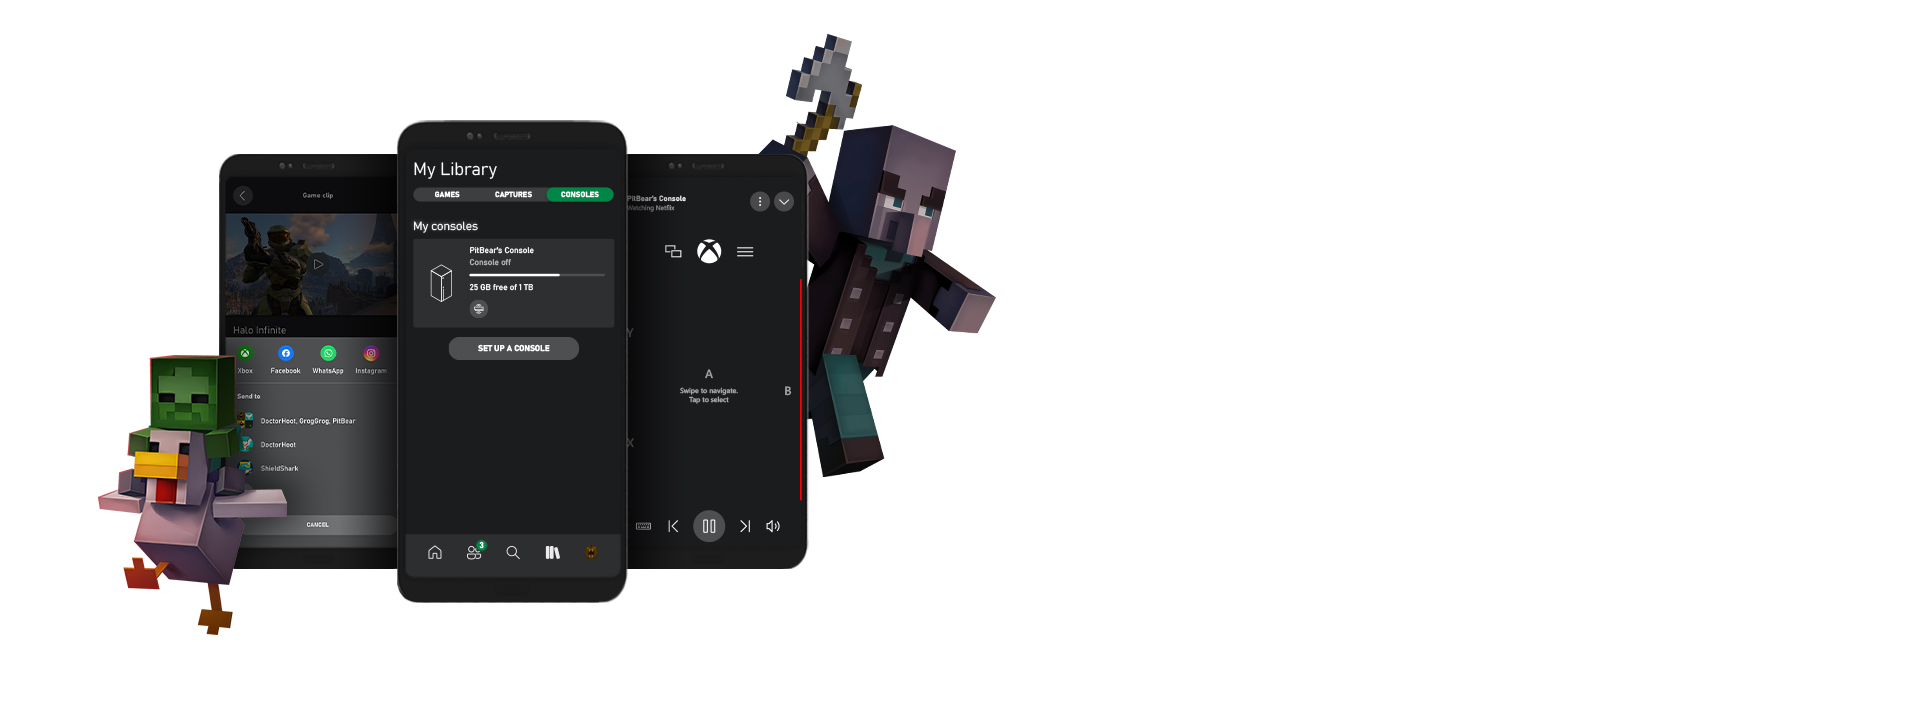 Los personajes de Minecraft rodean varias capturas de pantalla de la app Xbox para la interfaz de usuario de dispositivos móviles.